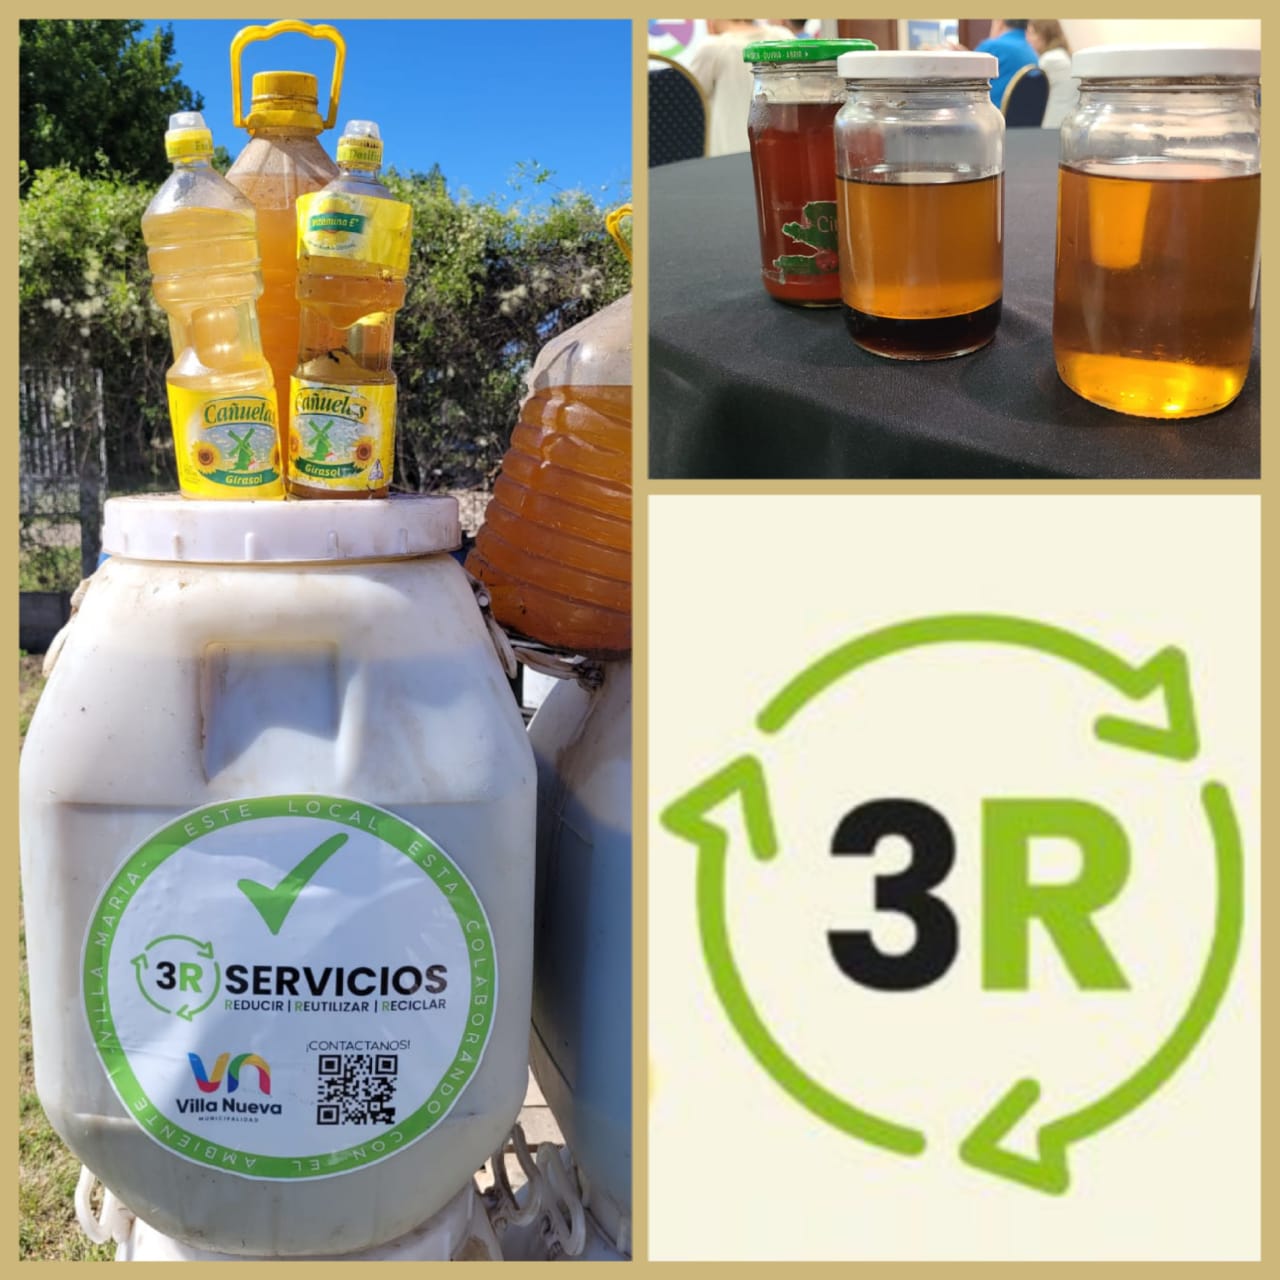 3R Servicios: el aceite de fritura ya tiene su destino sustentable